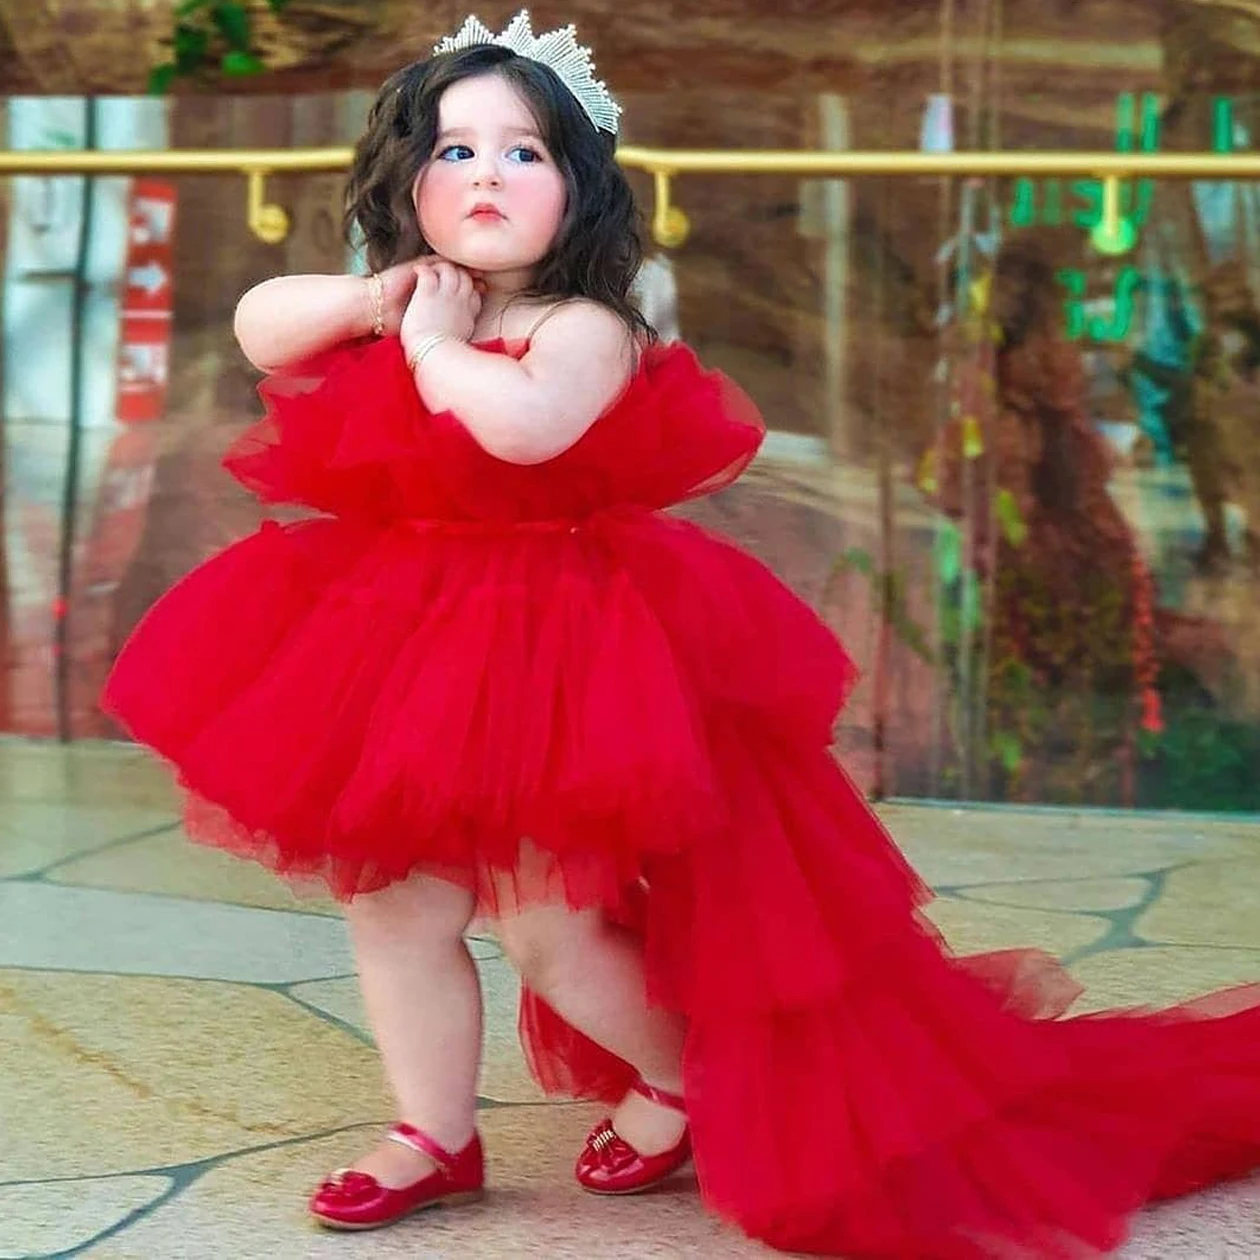 Vestido infantil Vermelho Daminha de Casamento Princesa - Vermelho